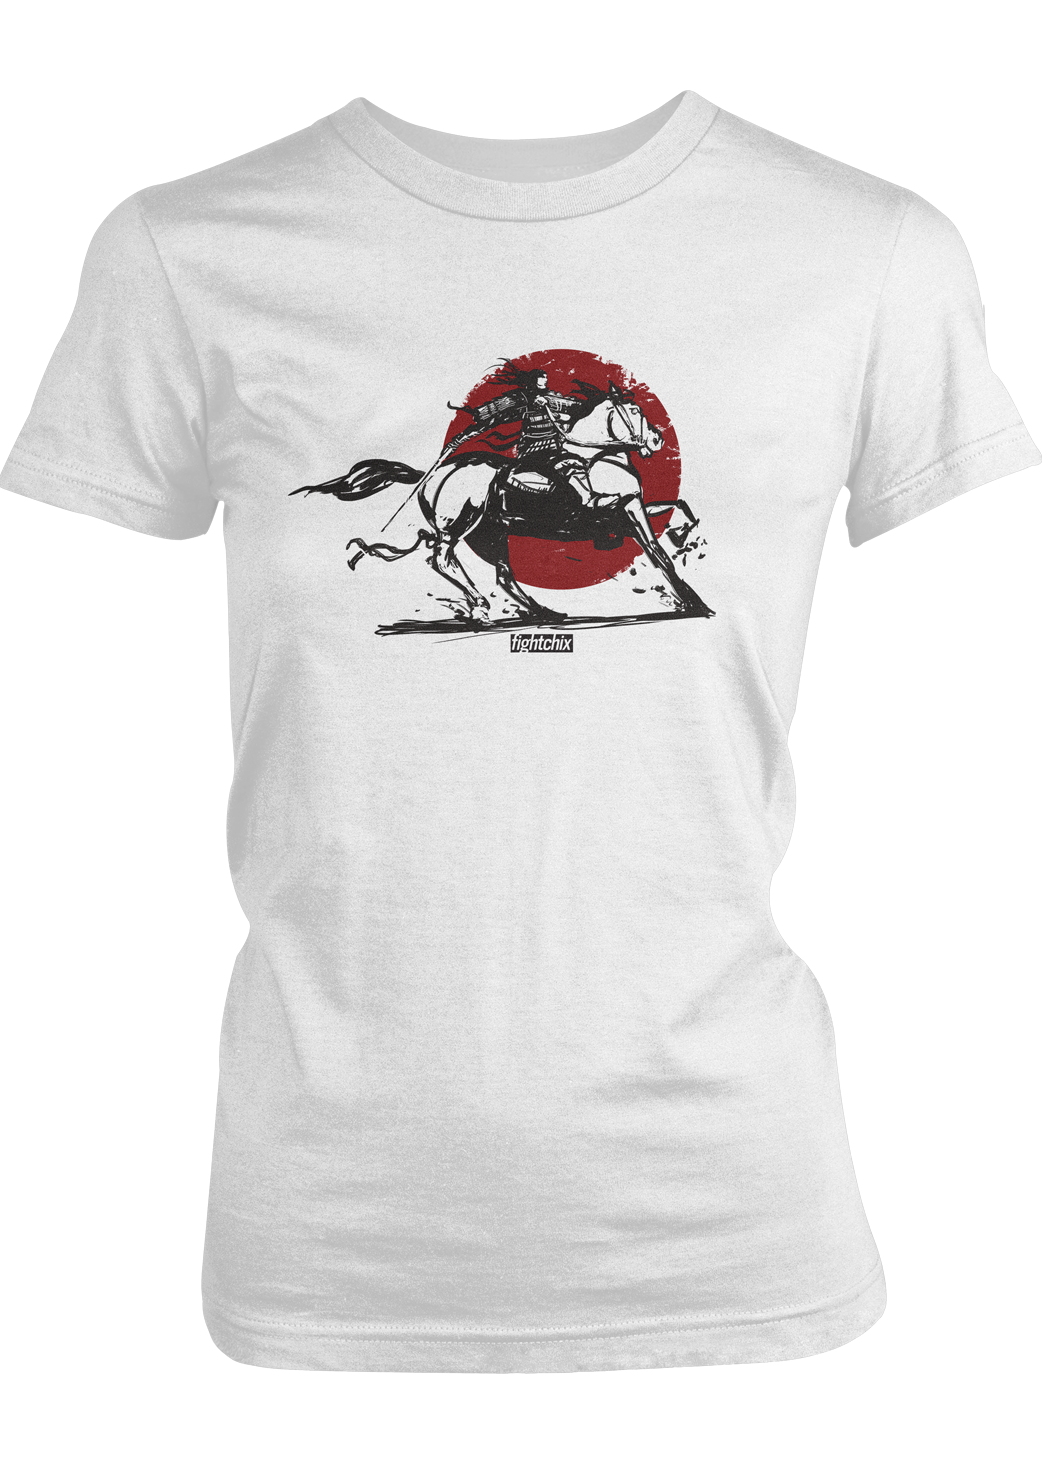 TOMOE GOZEN, HORSEBACK women's t-shirt